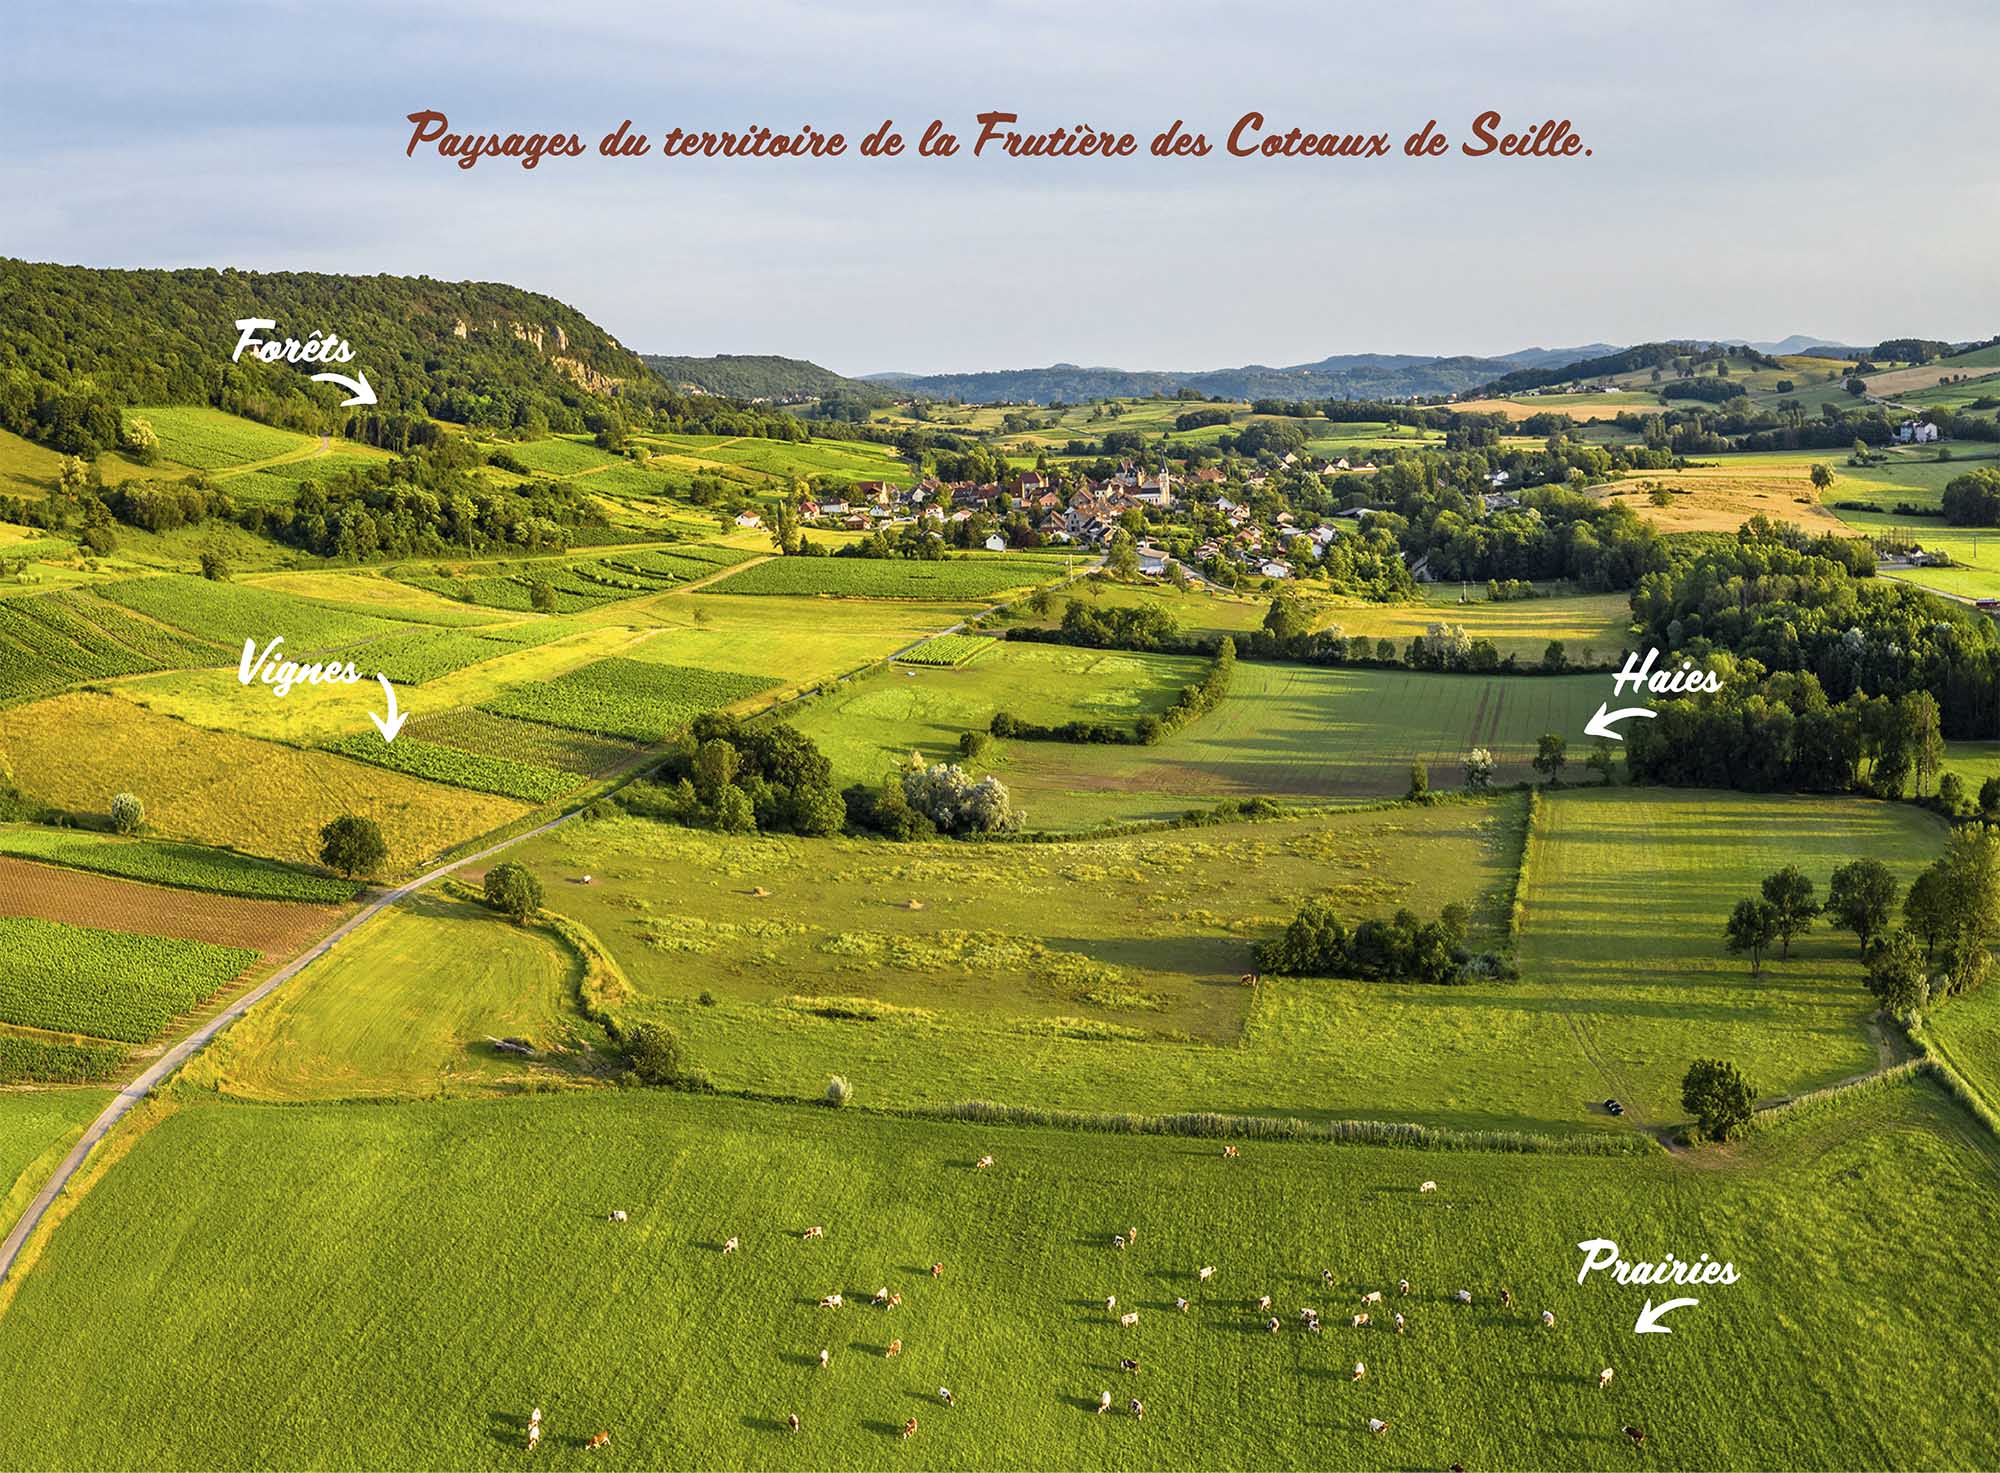 Paysages du Territoire de la Fruitière des Coteaux de Seille : forets, vignes, haies, prairies